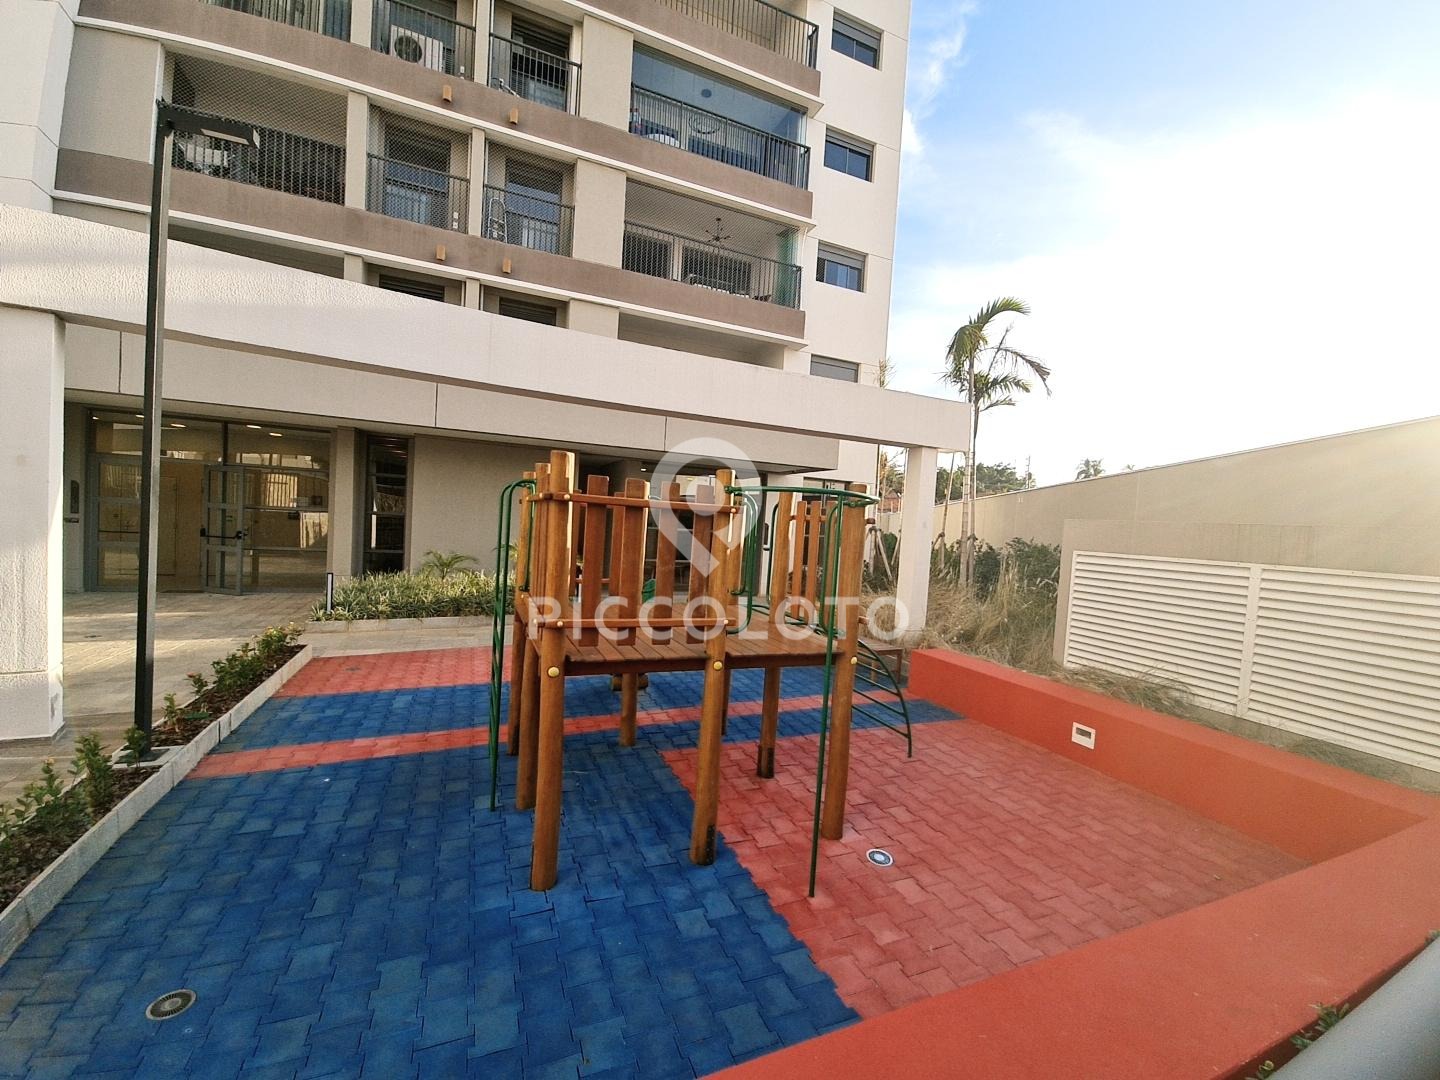 Piccoloto -Apartamento à venda no Jardim Brasil em Campinas